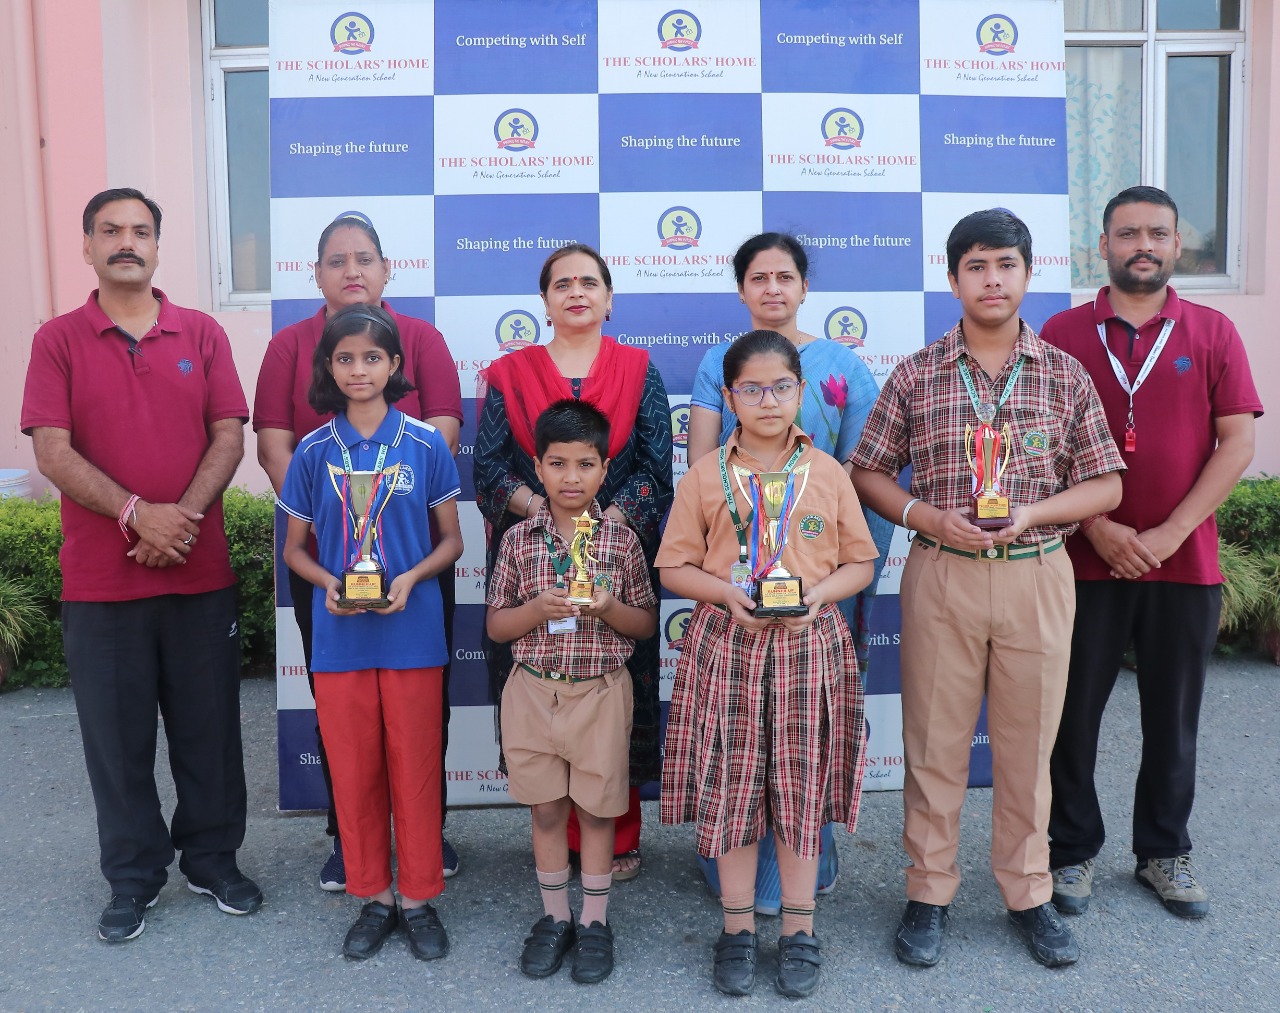 अर्पिता शर्मा व कनिष्ठा का शतरंज में राष्ट्रीय स्तर के लिए हुआ चयन:निशा